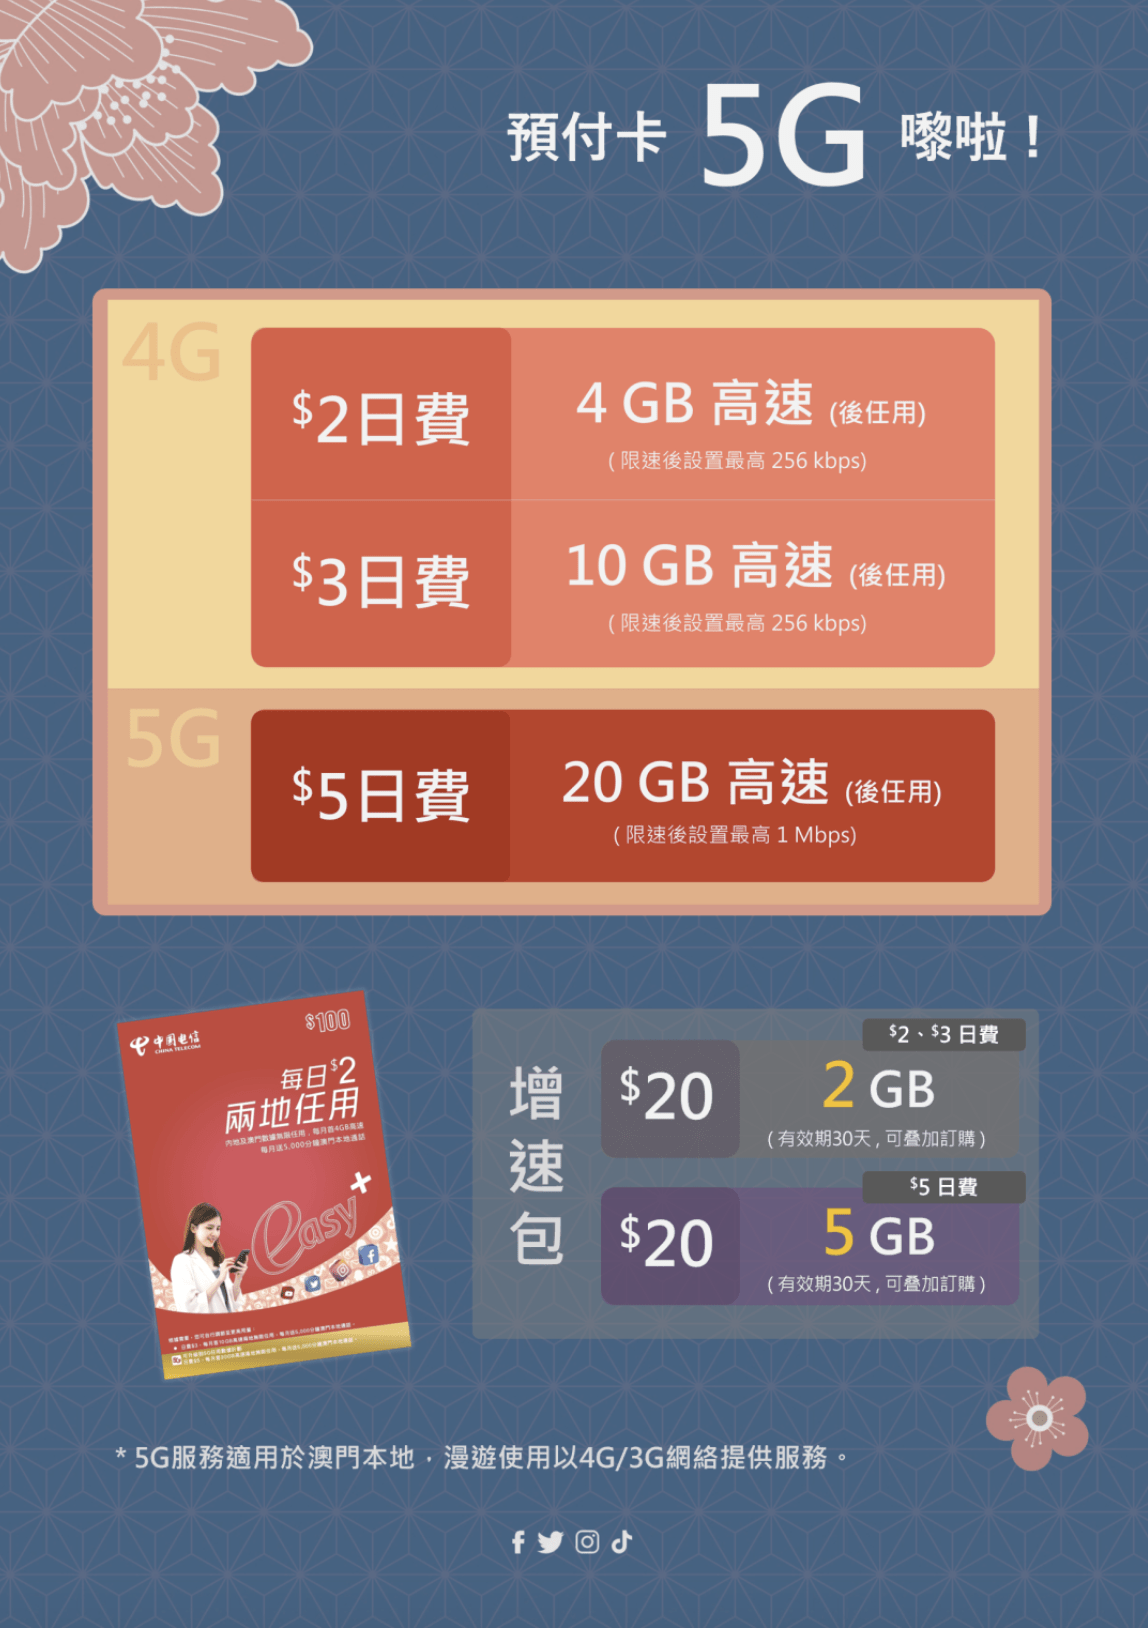 韩版苹果13是5g:中国电信已在澳门推出 5G 服务，原有客户改套餐即可升级 5G 网络